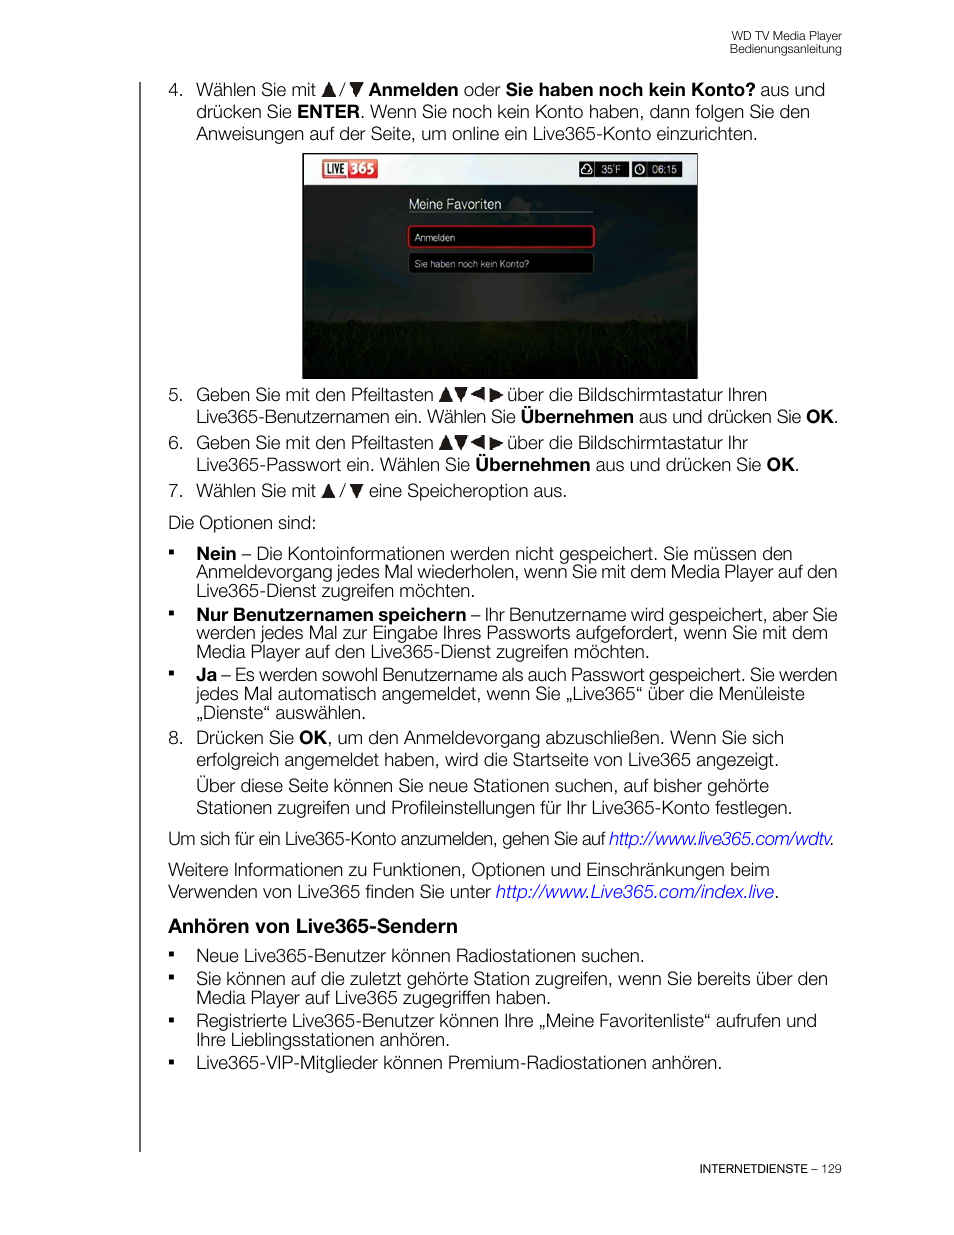 Anhören von live365-sendern | Western Digital WD TV User Manual Benutzerhandbuch | Seite 134 / 255